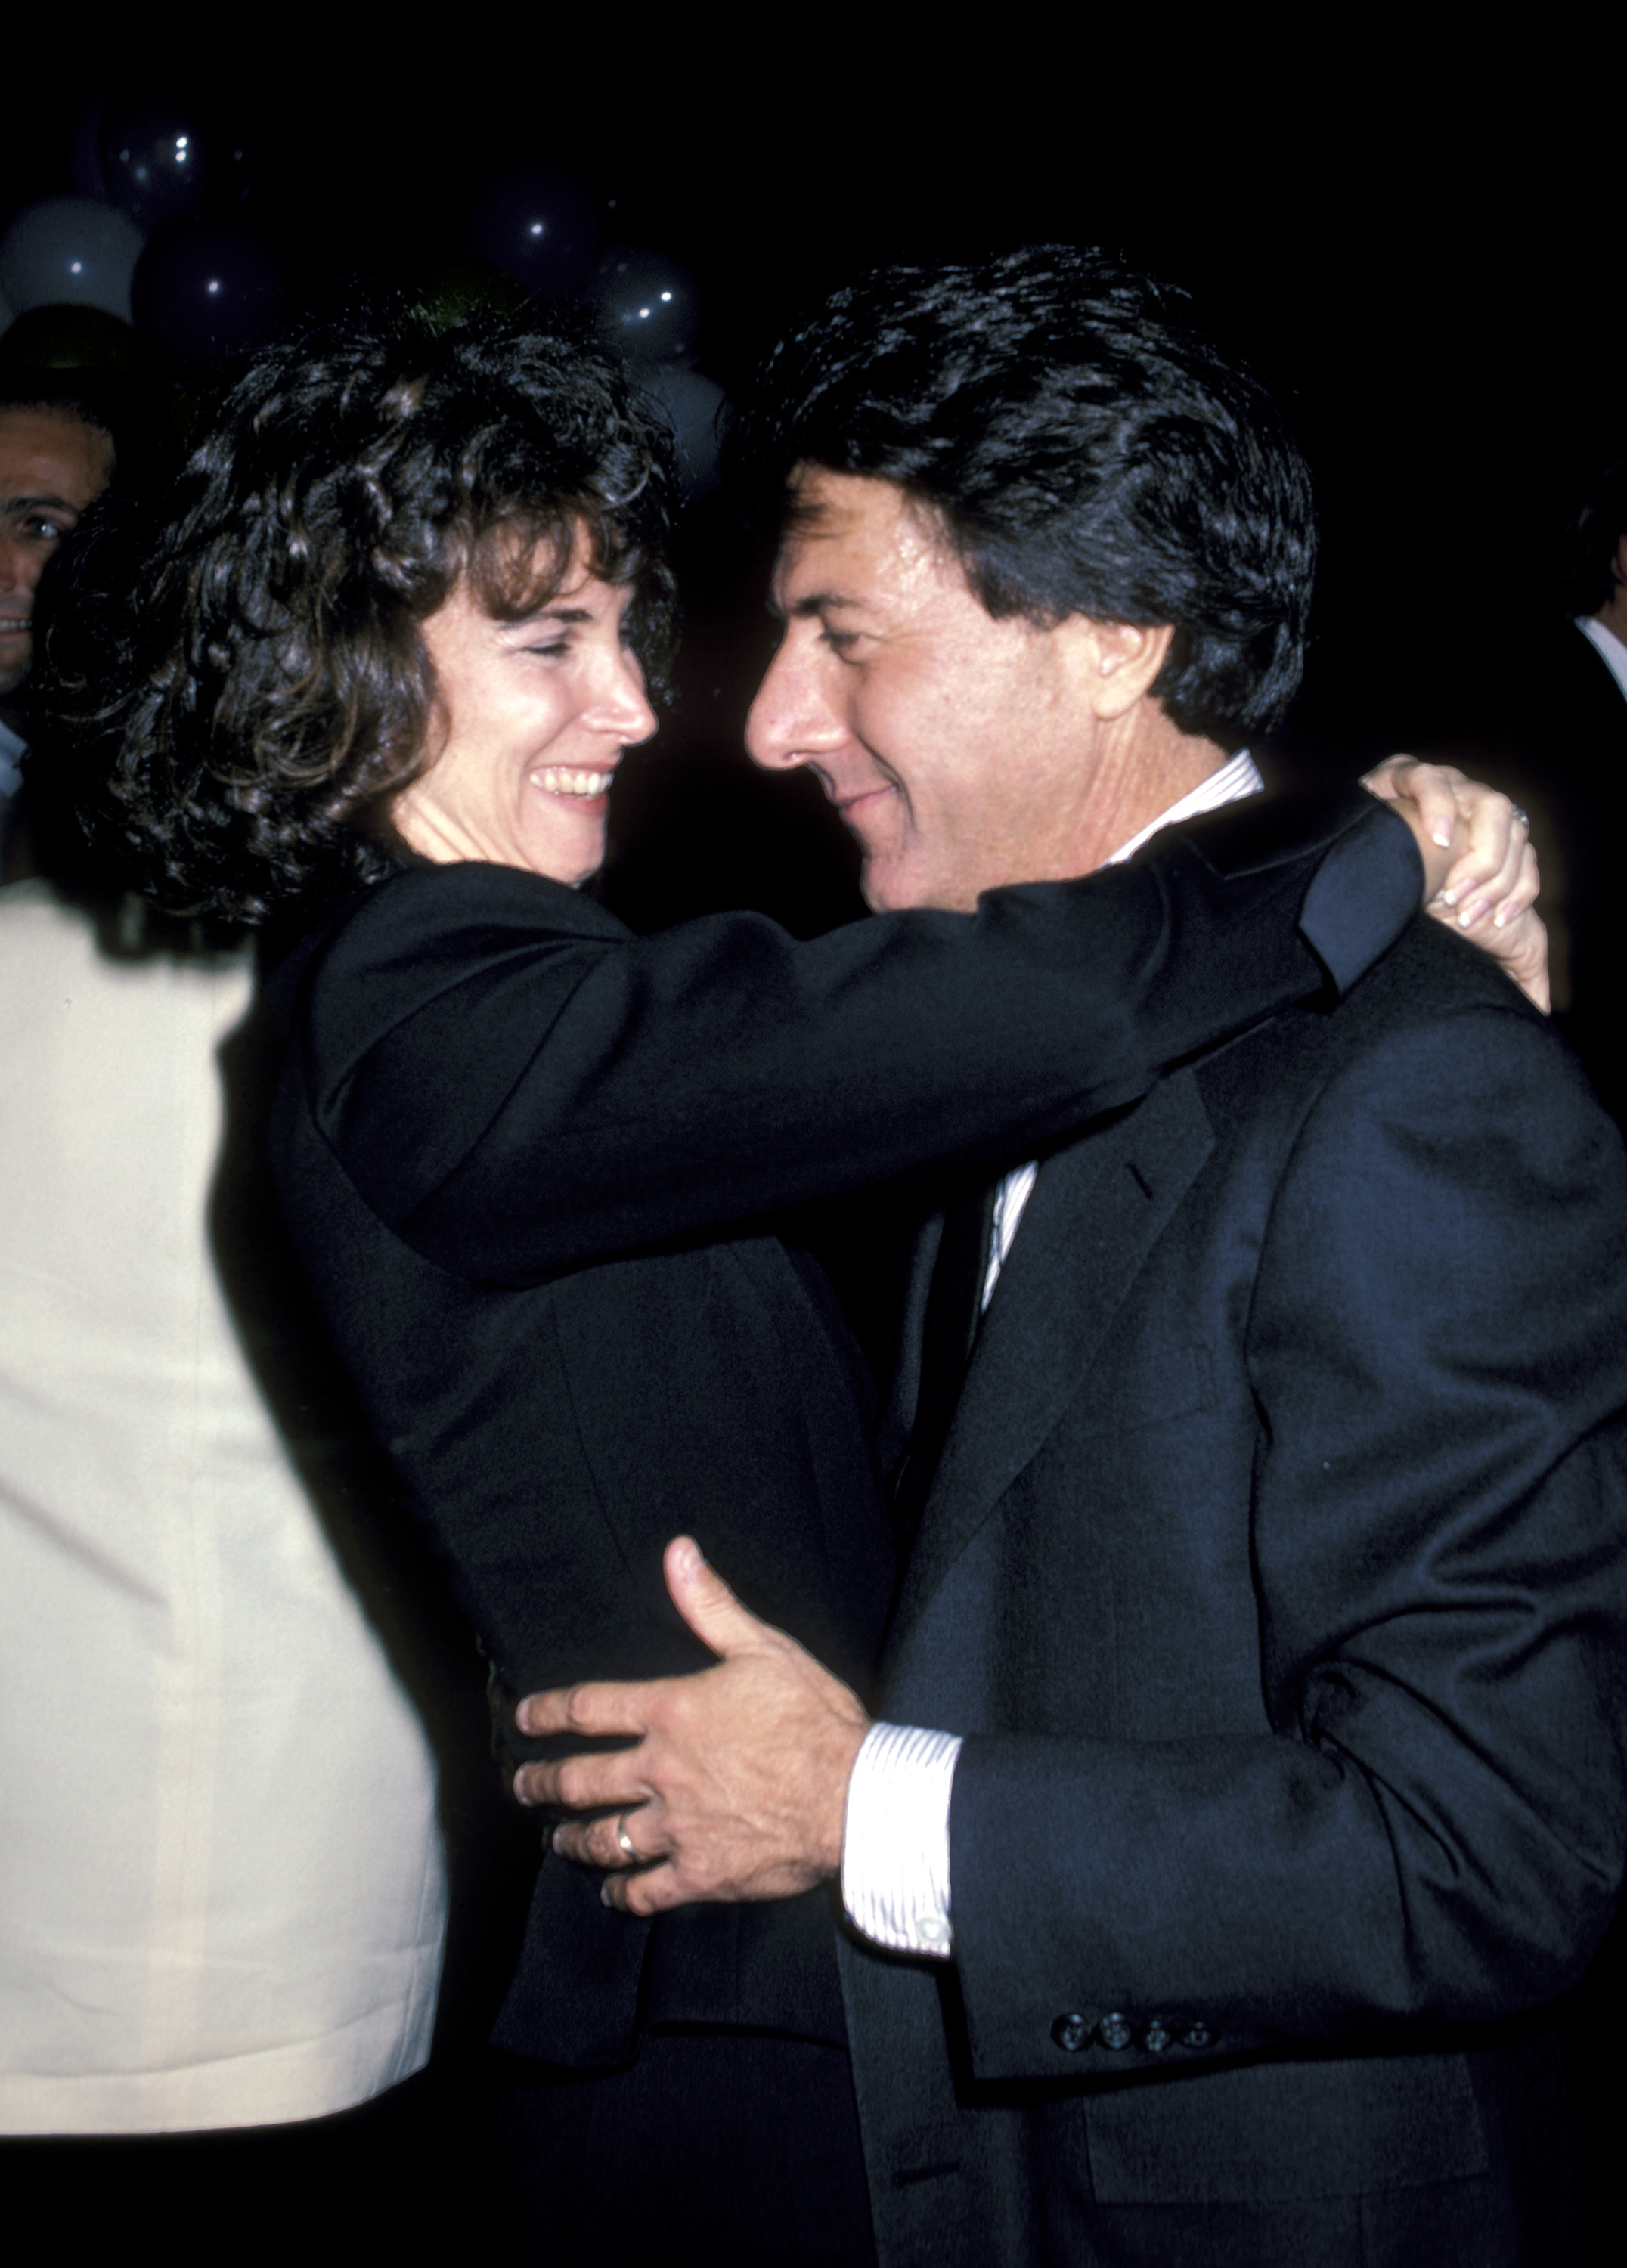 Die Frau und der Schauspieler während der Smile Party in New York City am 24. November 1986. | Quelle: Getty Images